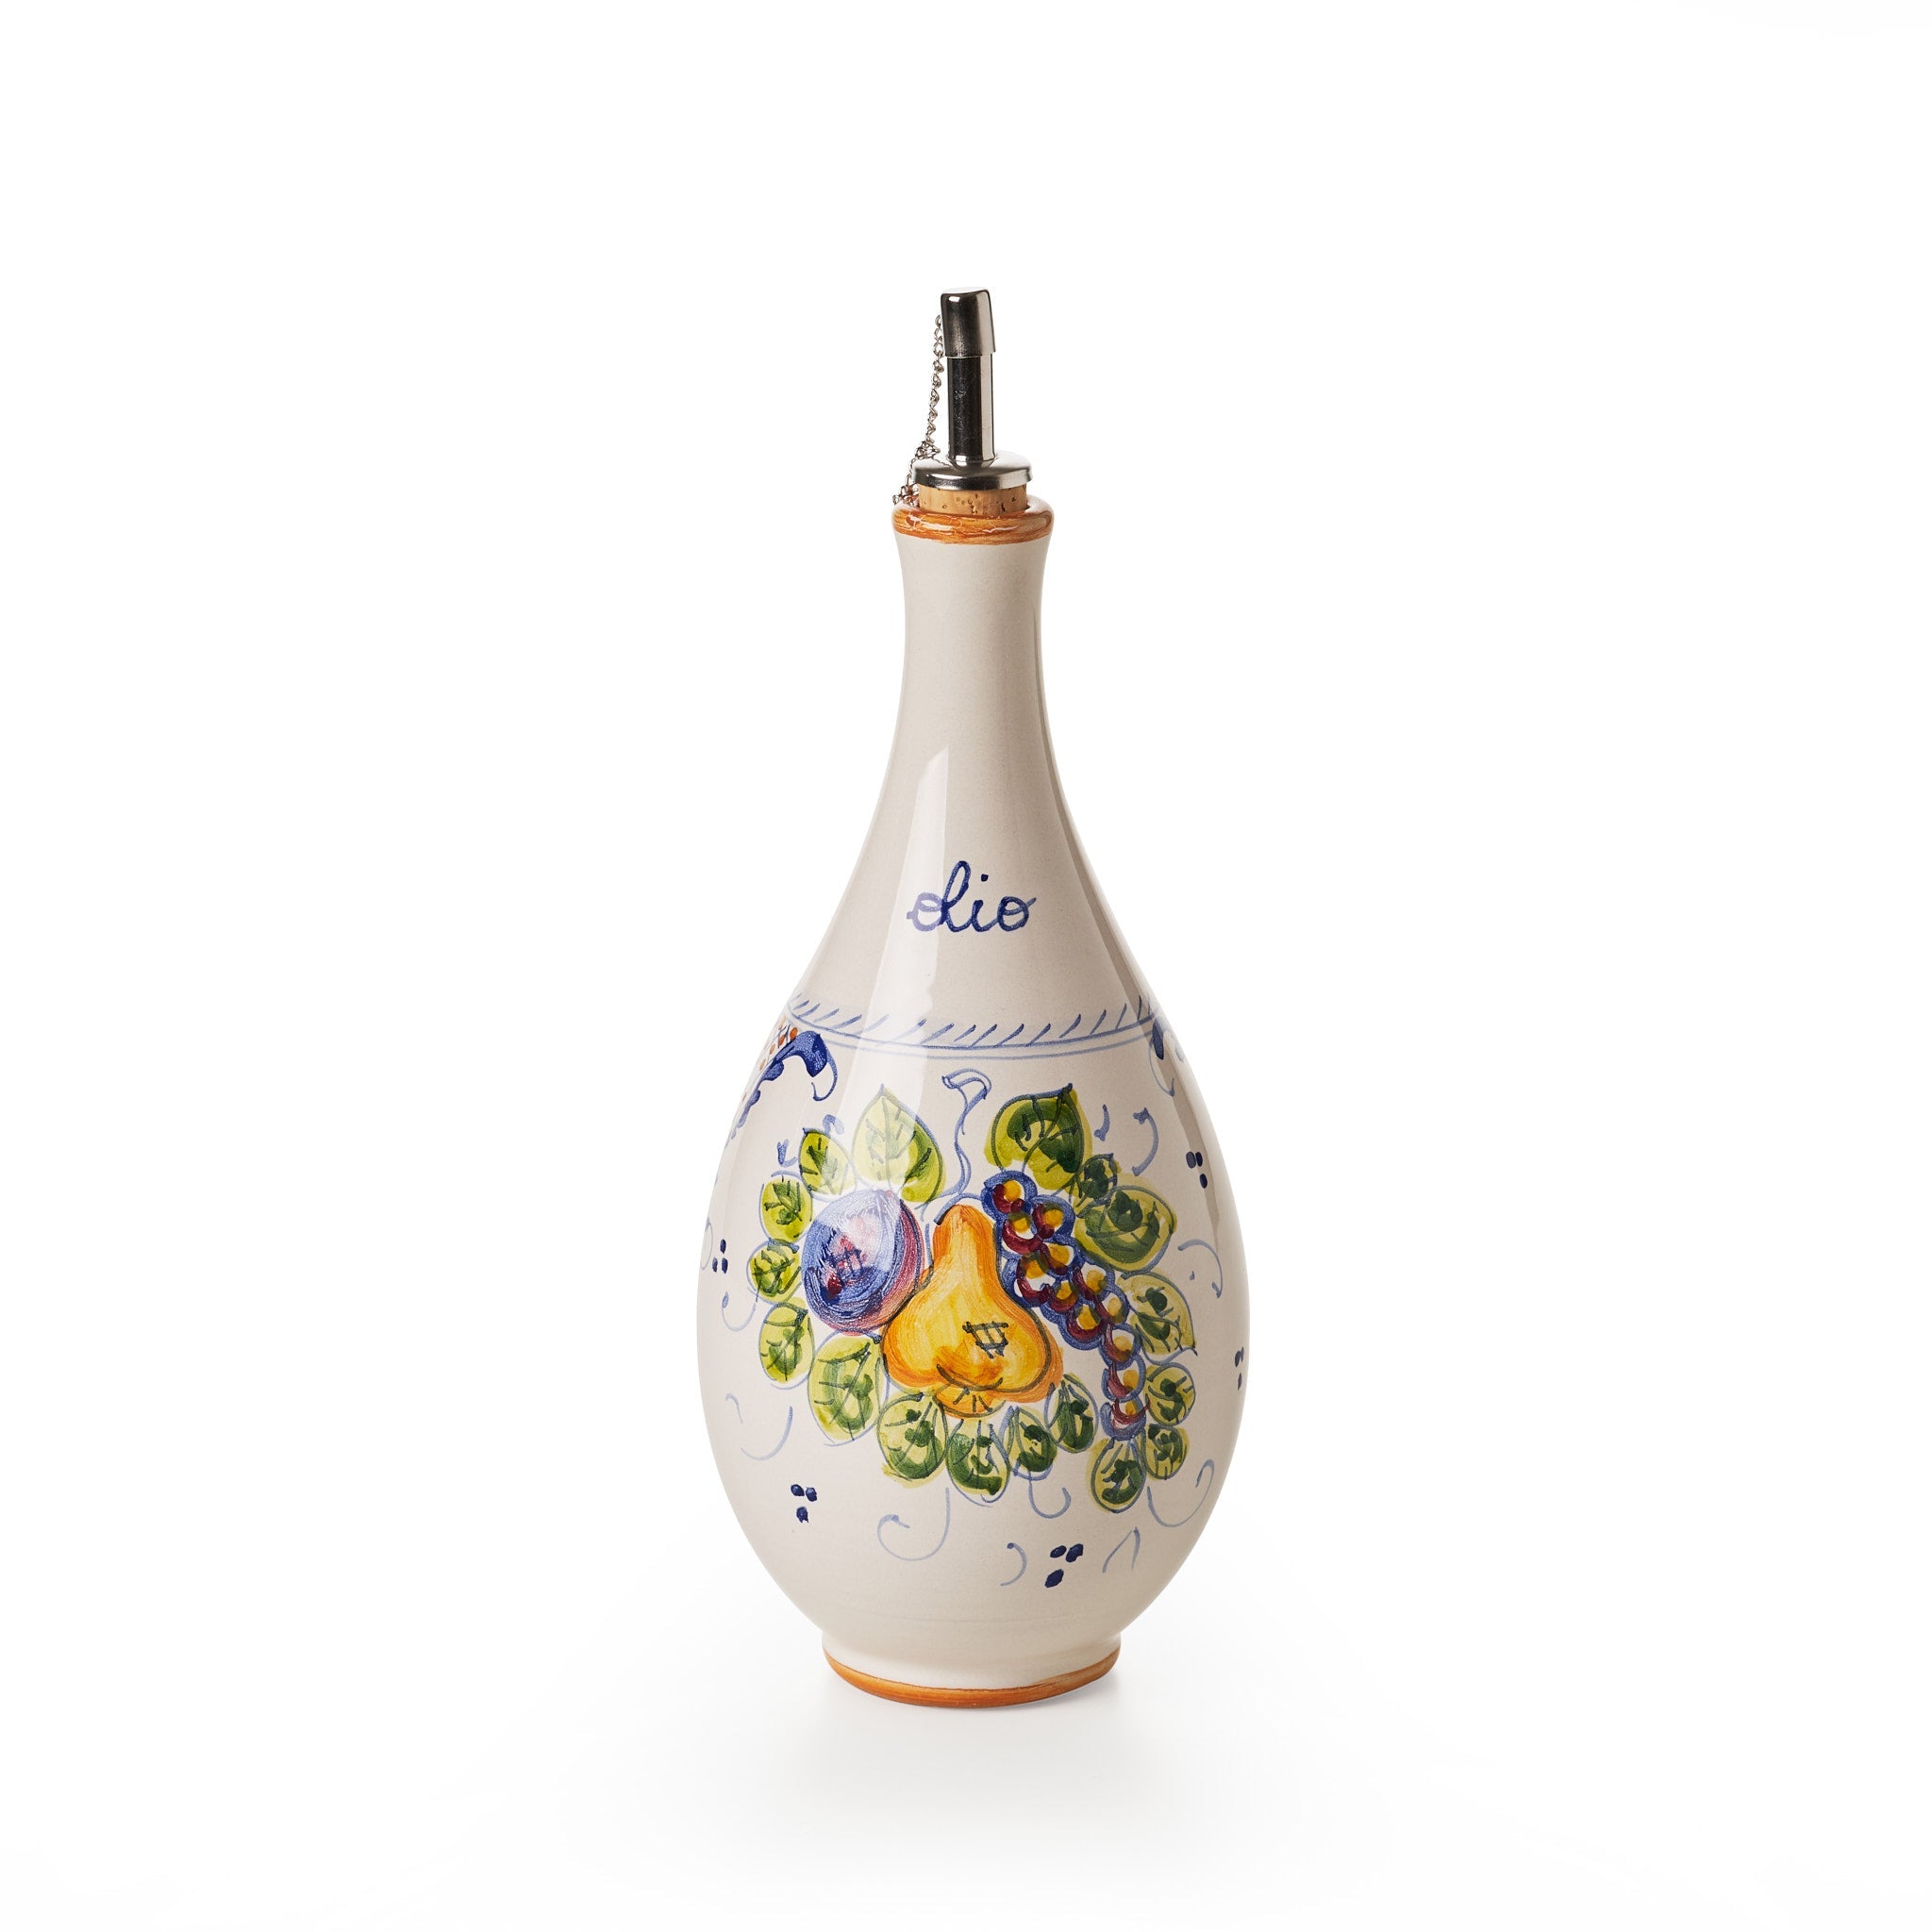 sbigoli-ceramics-pottery-oil-bottle-saucer-spoon-holder-set-autunno-autumn